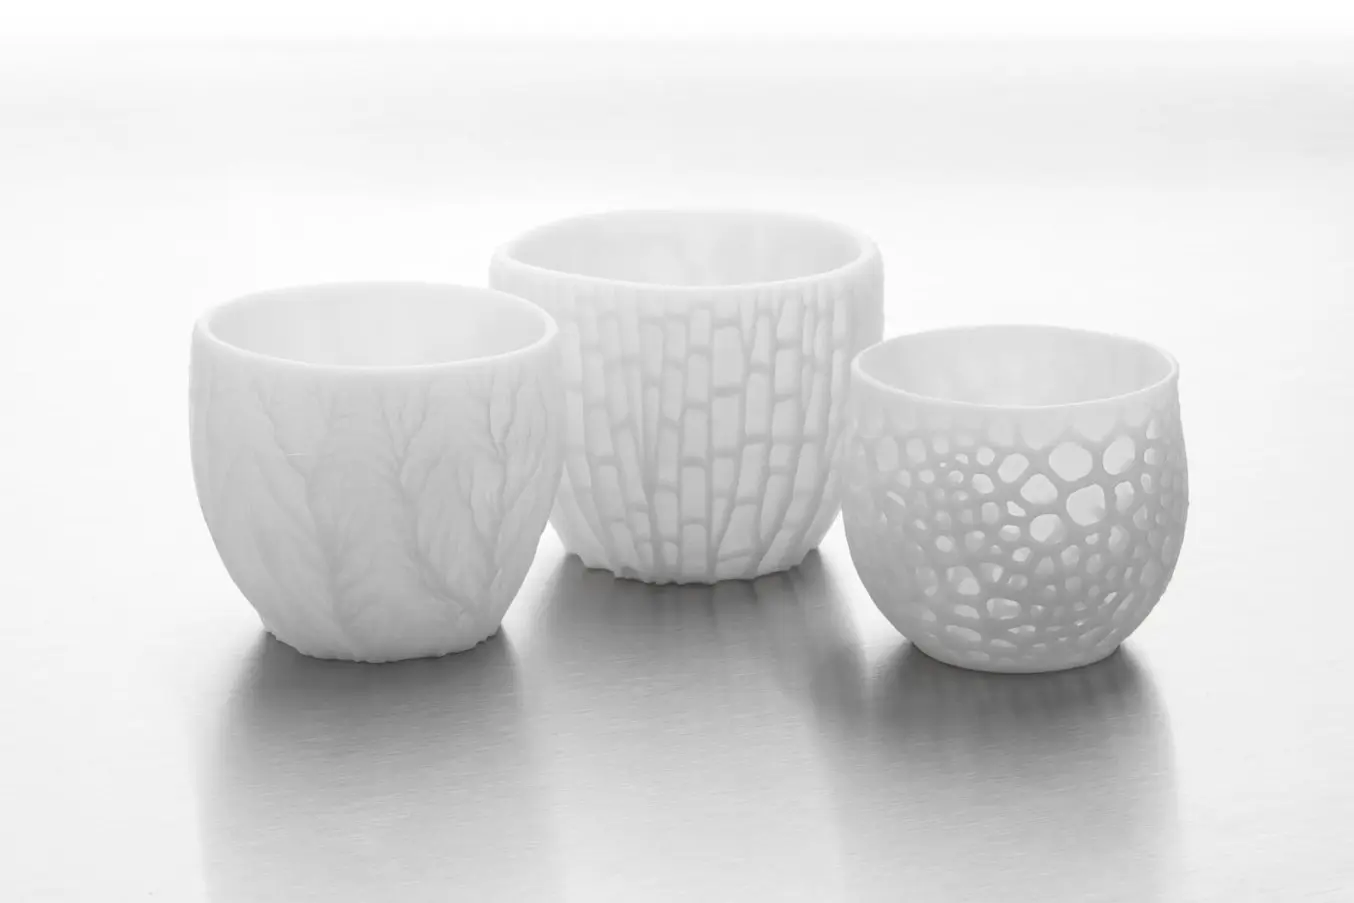 Ceramic Resin 3D printed vases